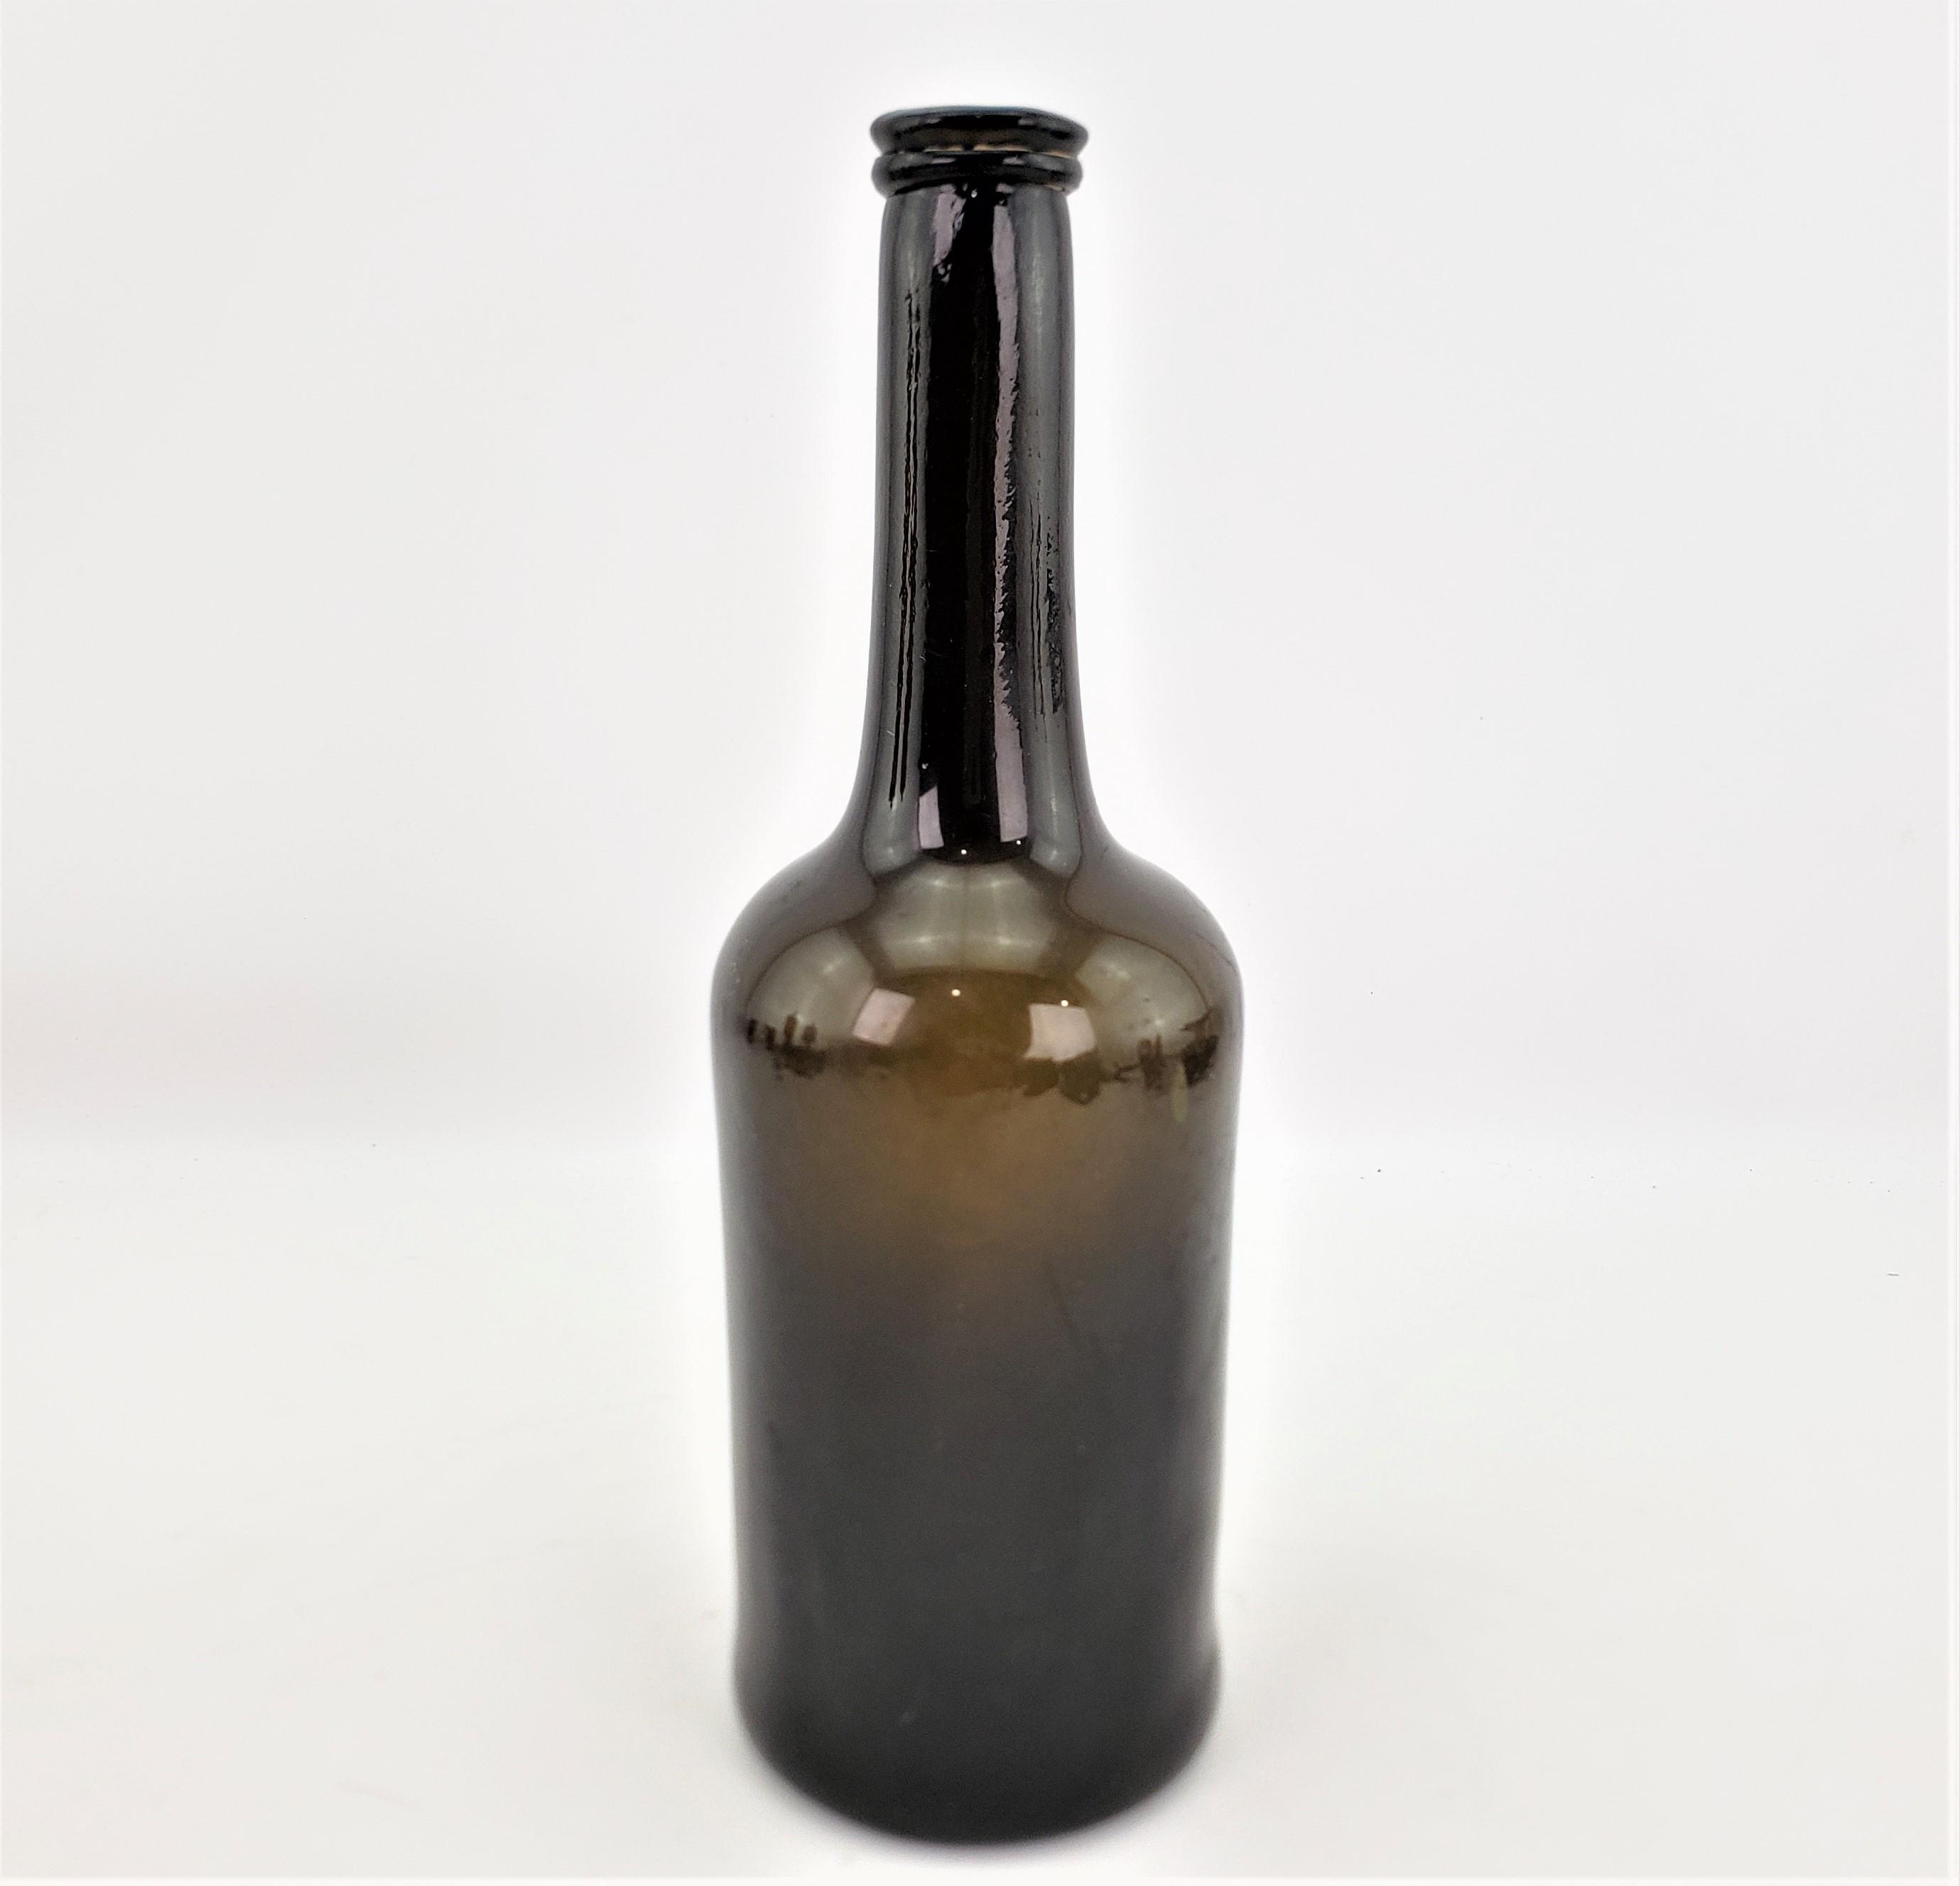 Diese antike, handgefertigte Weinflasche hat keine Herstellermarken, aber vermutlich stammt sie aus England und wurde um 1740 im georgianischen Stil hergestellt. Das Glas ist ein sehr tiefes Olivgrün, das mundgeblasen und zu einer Schlegelform